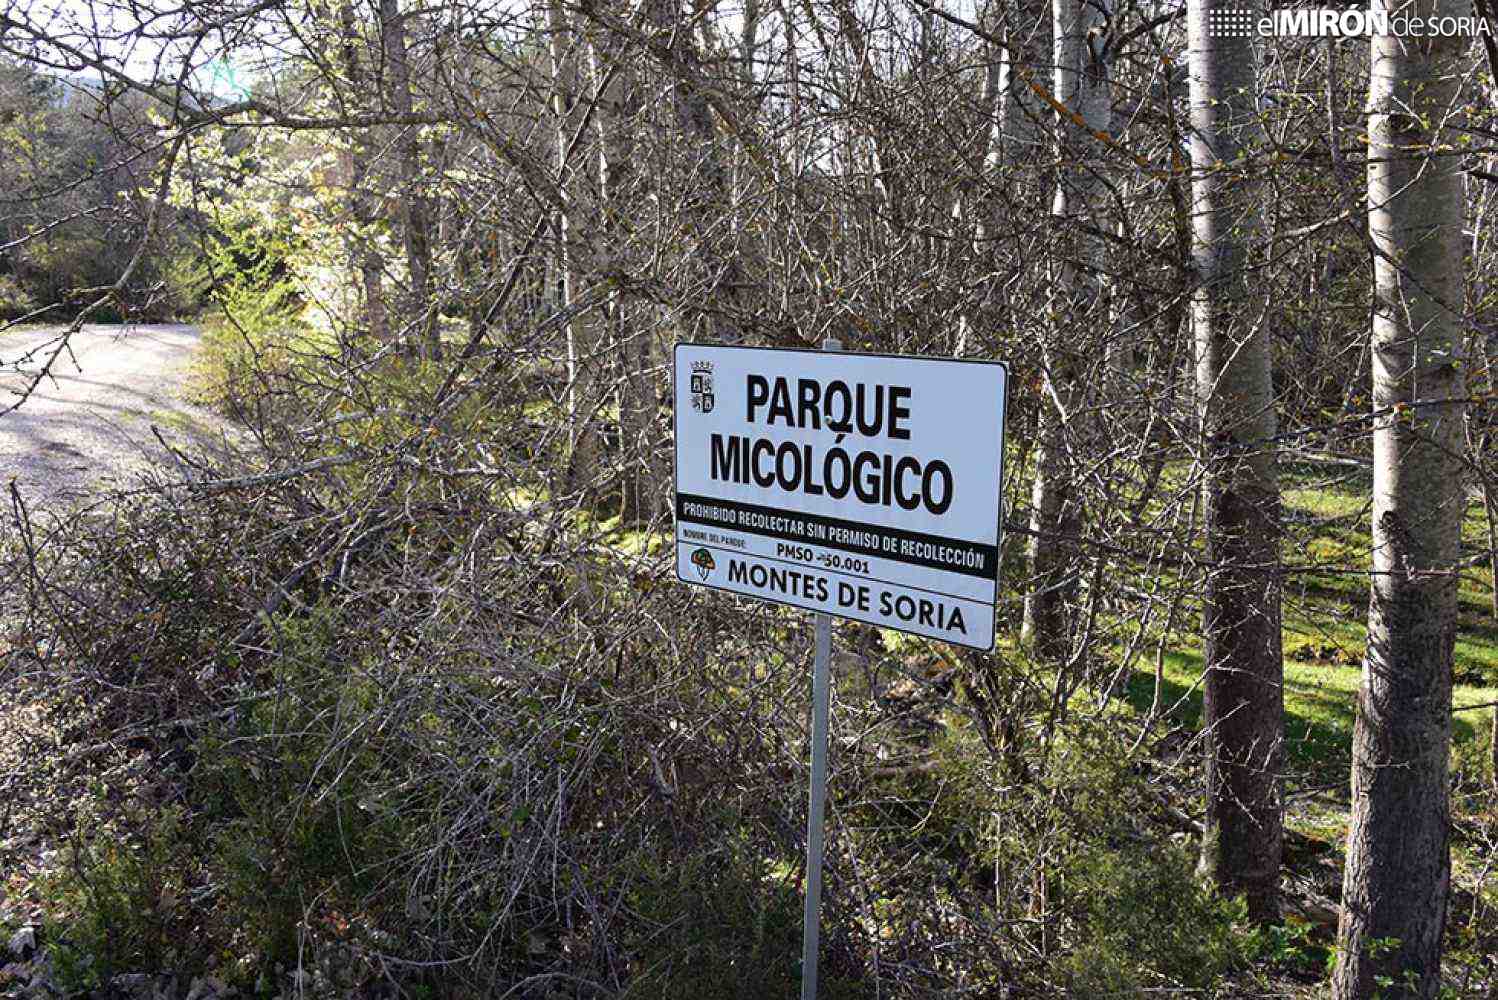 El Parque Micológico Montes de Soria vende más de la mitad de los permisos de recolección en Castilla y León